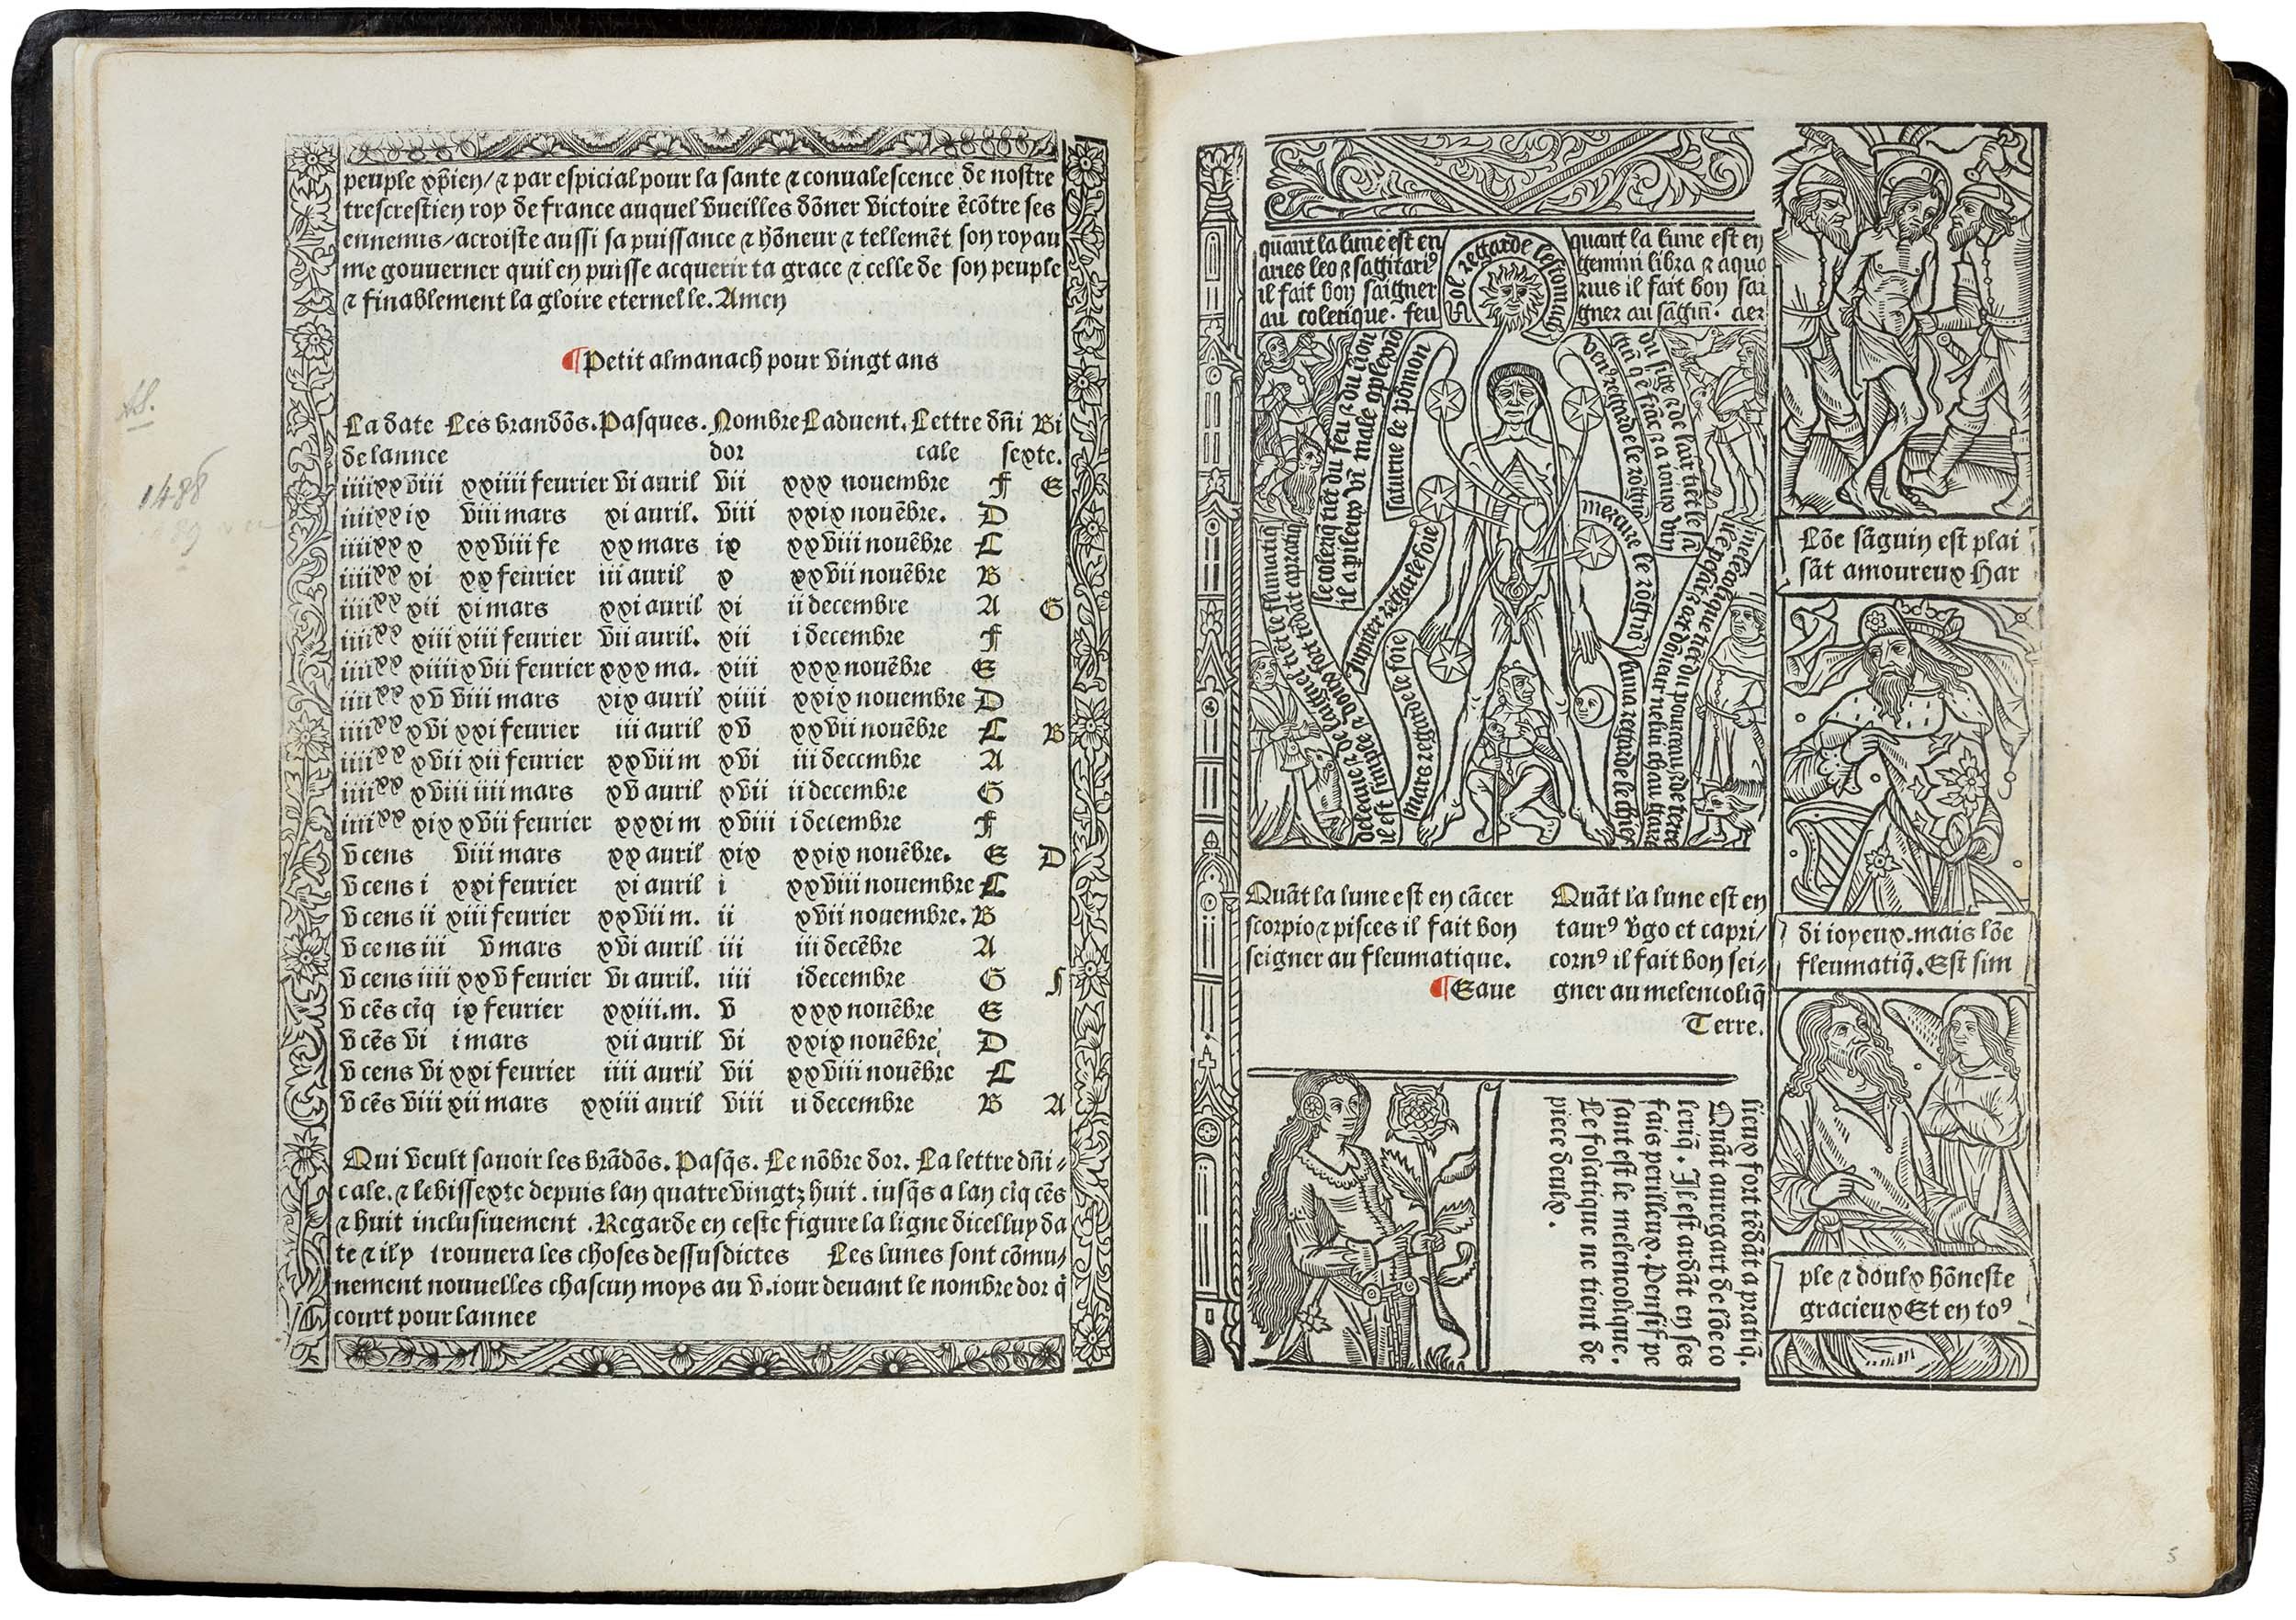 Grandes-heures-royales-verard-1488-1489-printed-book-of-hours-horae-bmv-7.jpg